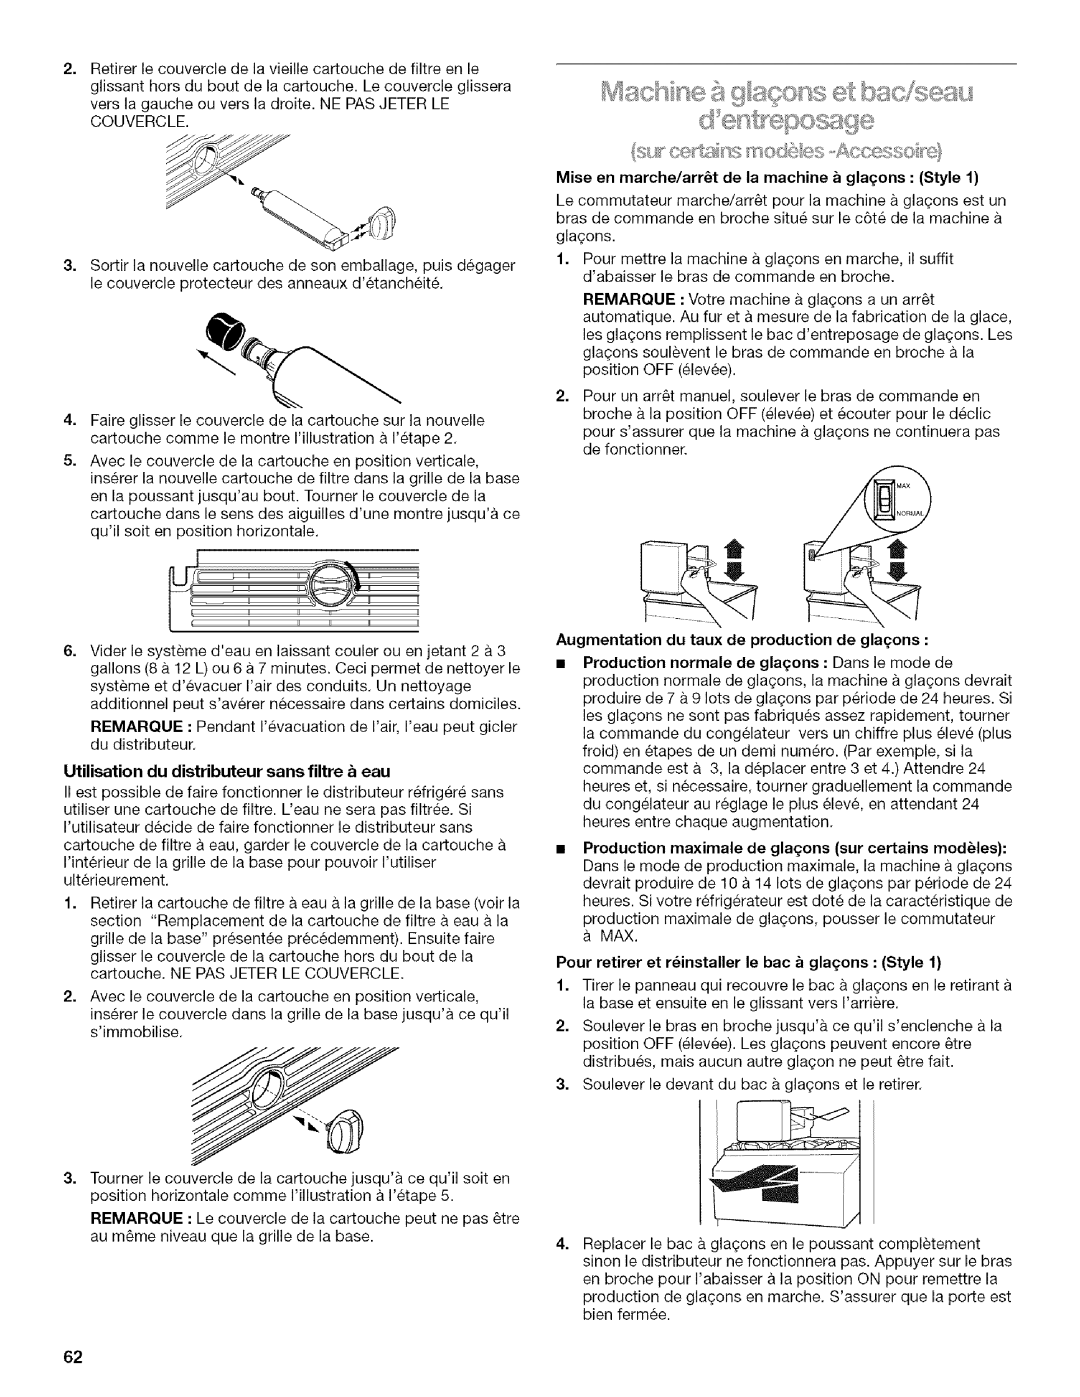 Kenmore 2205960 manual Utilisation du distributeur sans filtre _ eau 